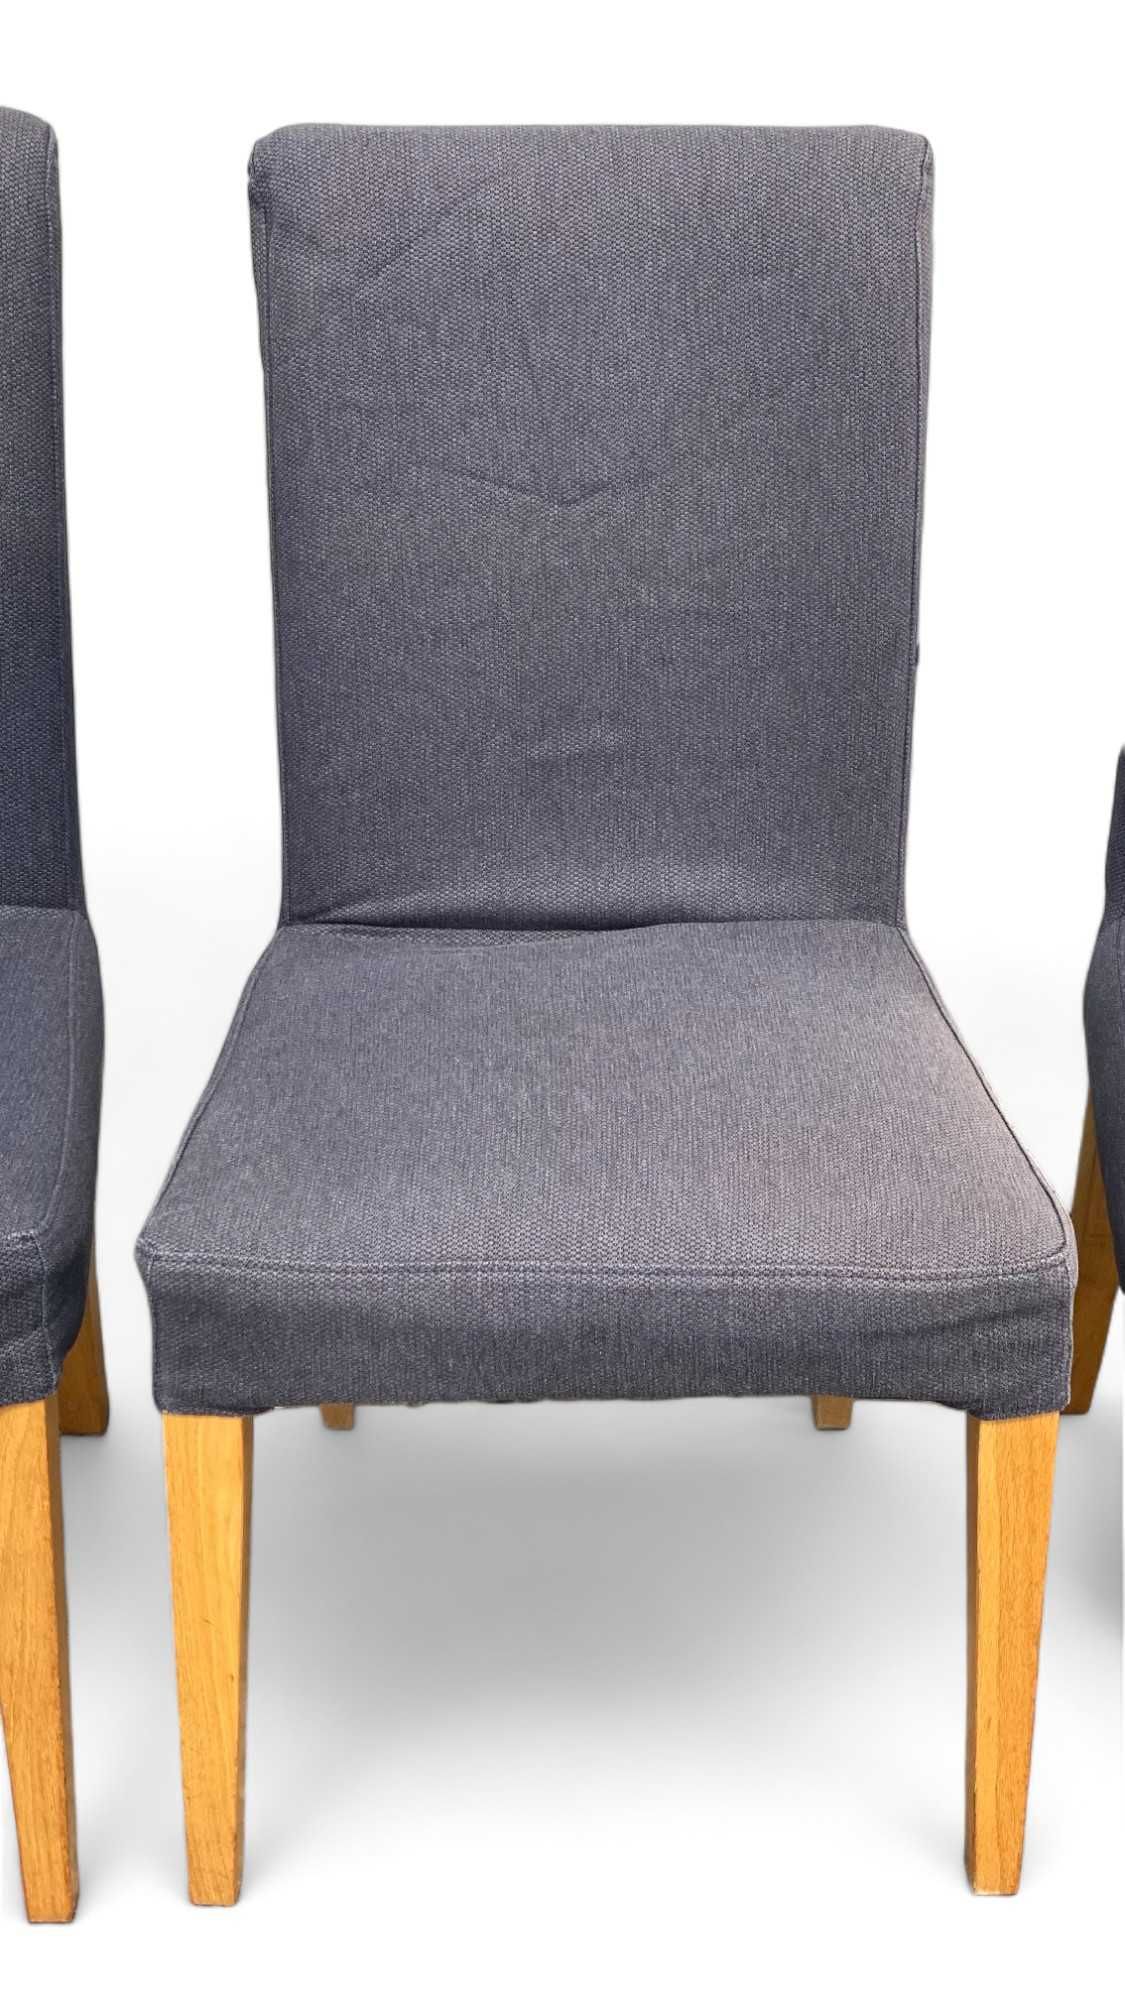 6 krzeseł IKEA HENRIKSDAL, KOMPLET, krzesła